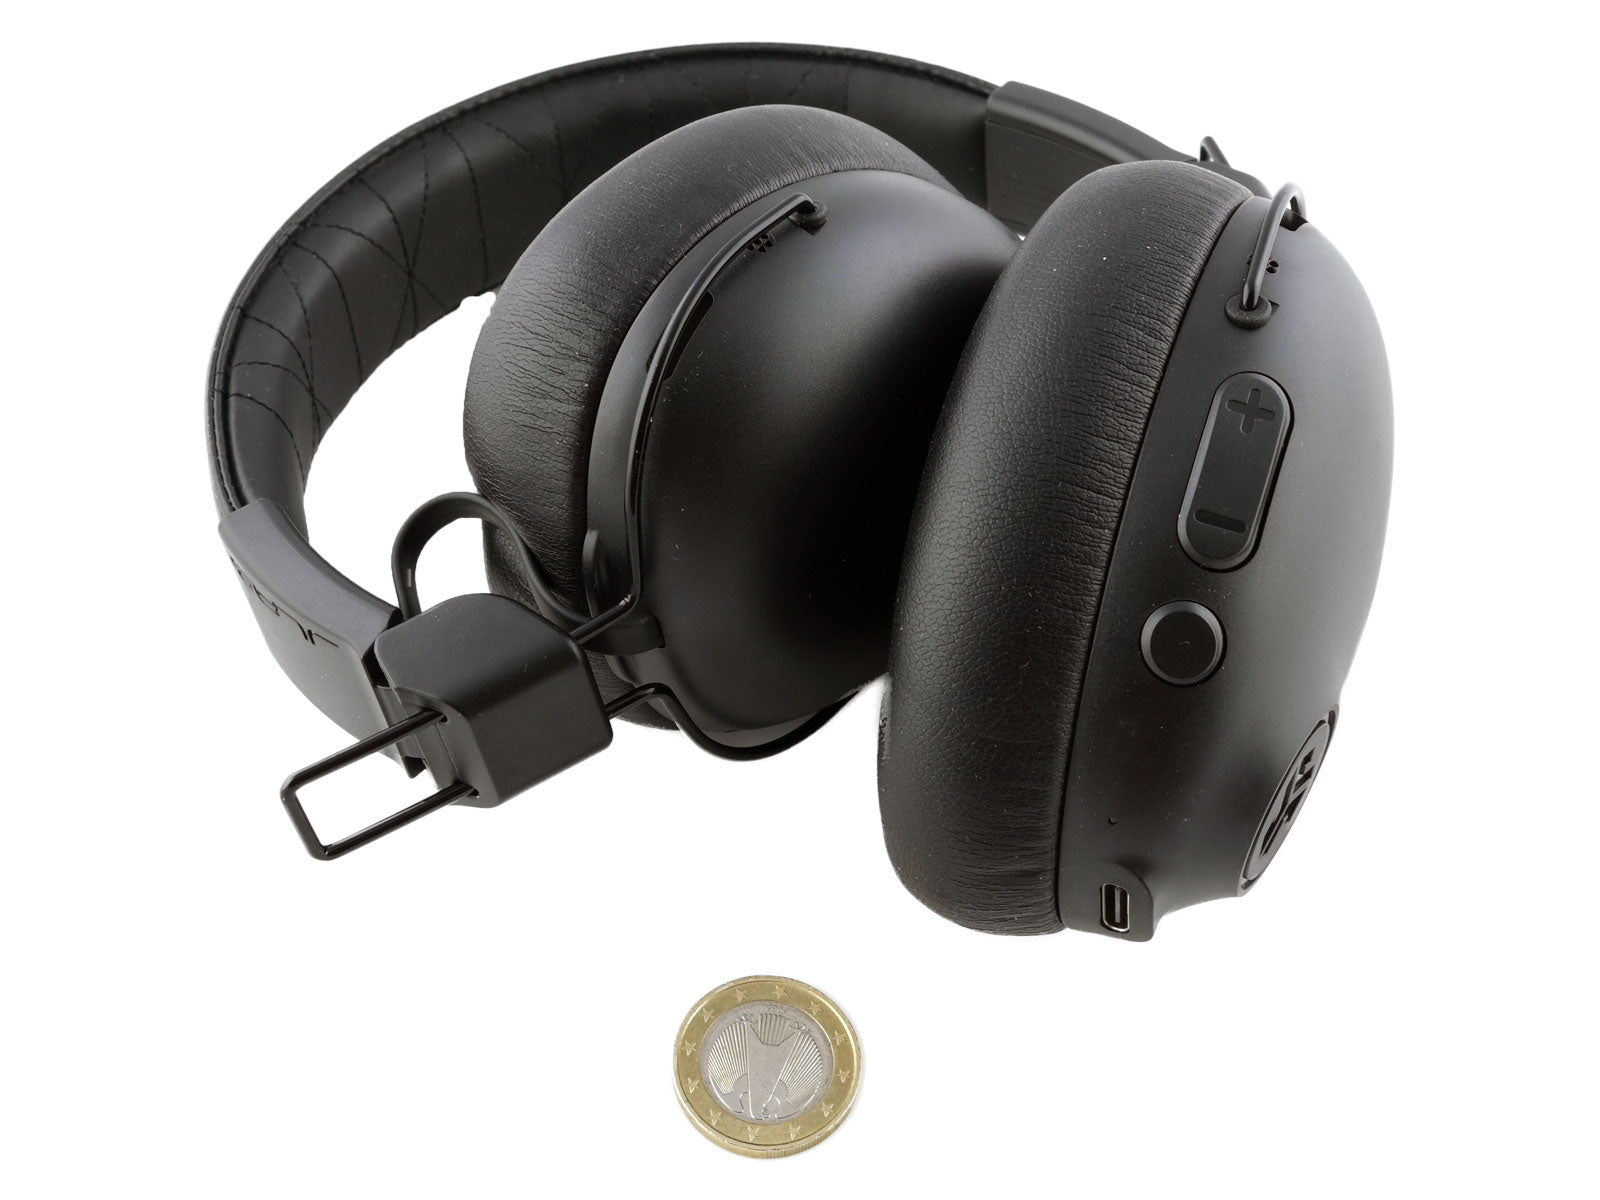 JLab Studio Pro ANC Wireless Over-Ear Kopfhörer Schwarze Ohrenhörer auf einer weißen Oberfläche, darunter eine kleine Münze als Maßstab.